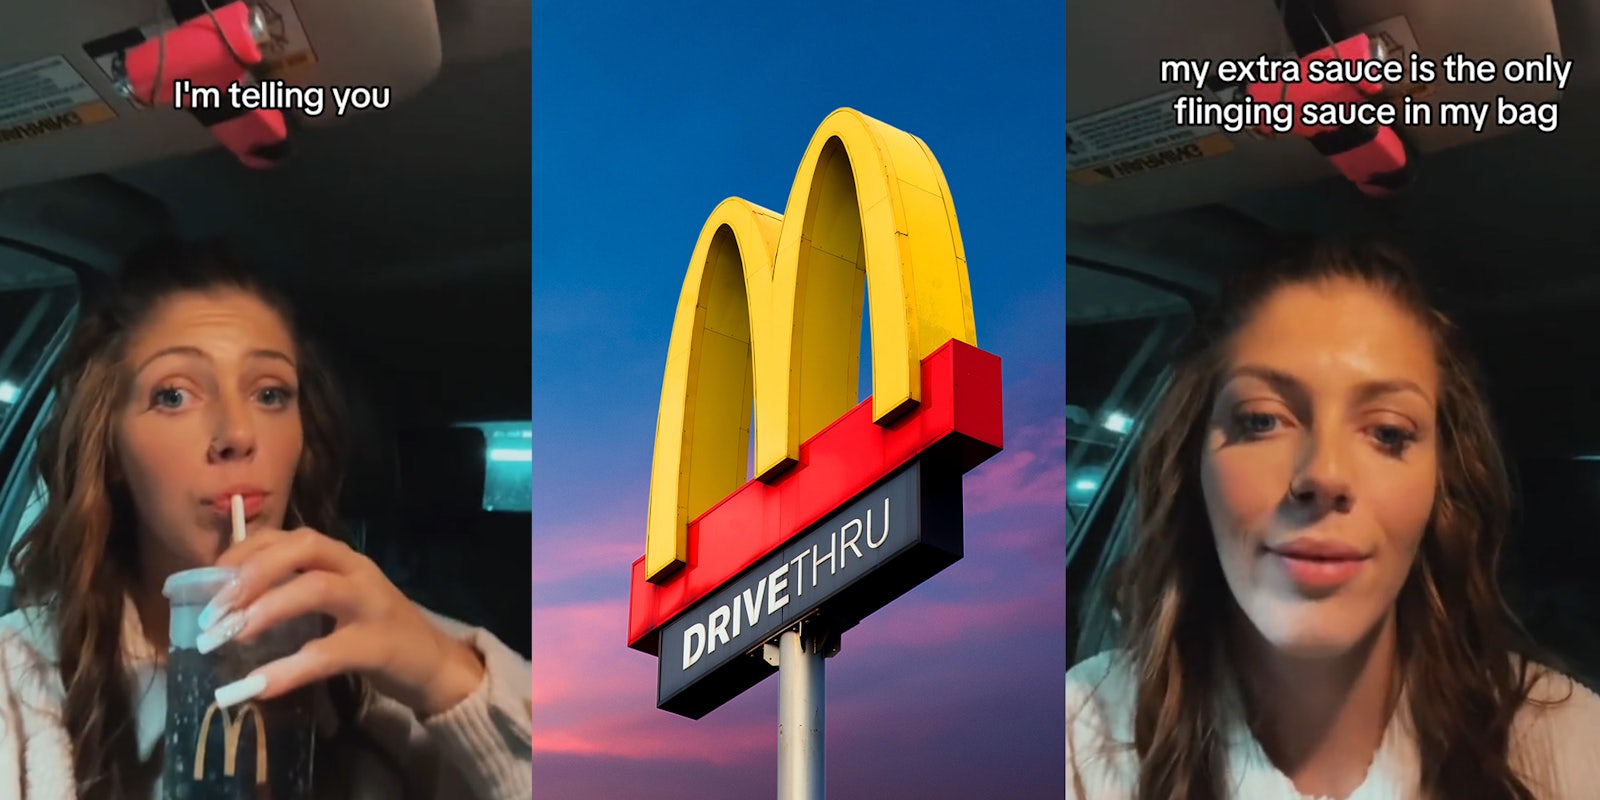 McDonald’s drive thru sauce hack to make sure you actually get your sauce